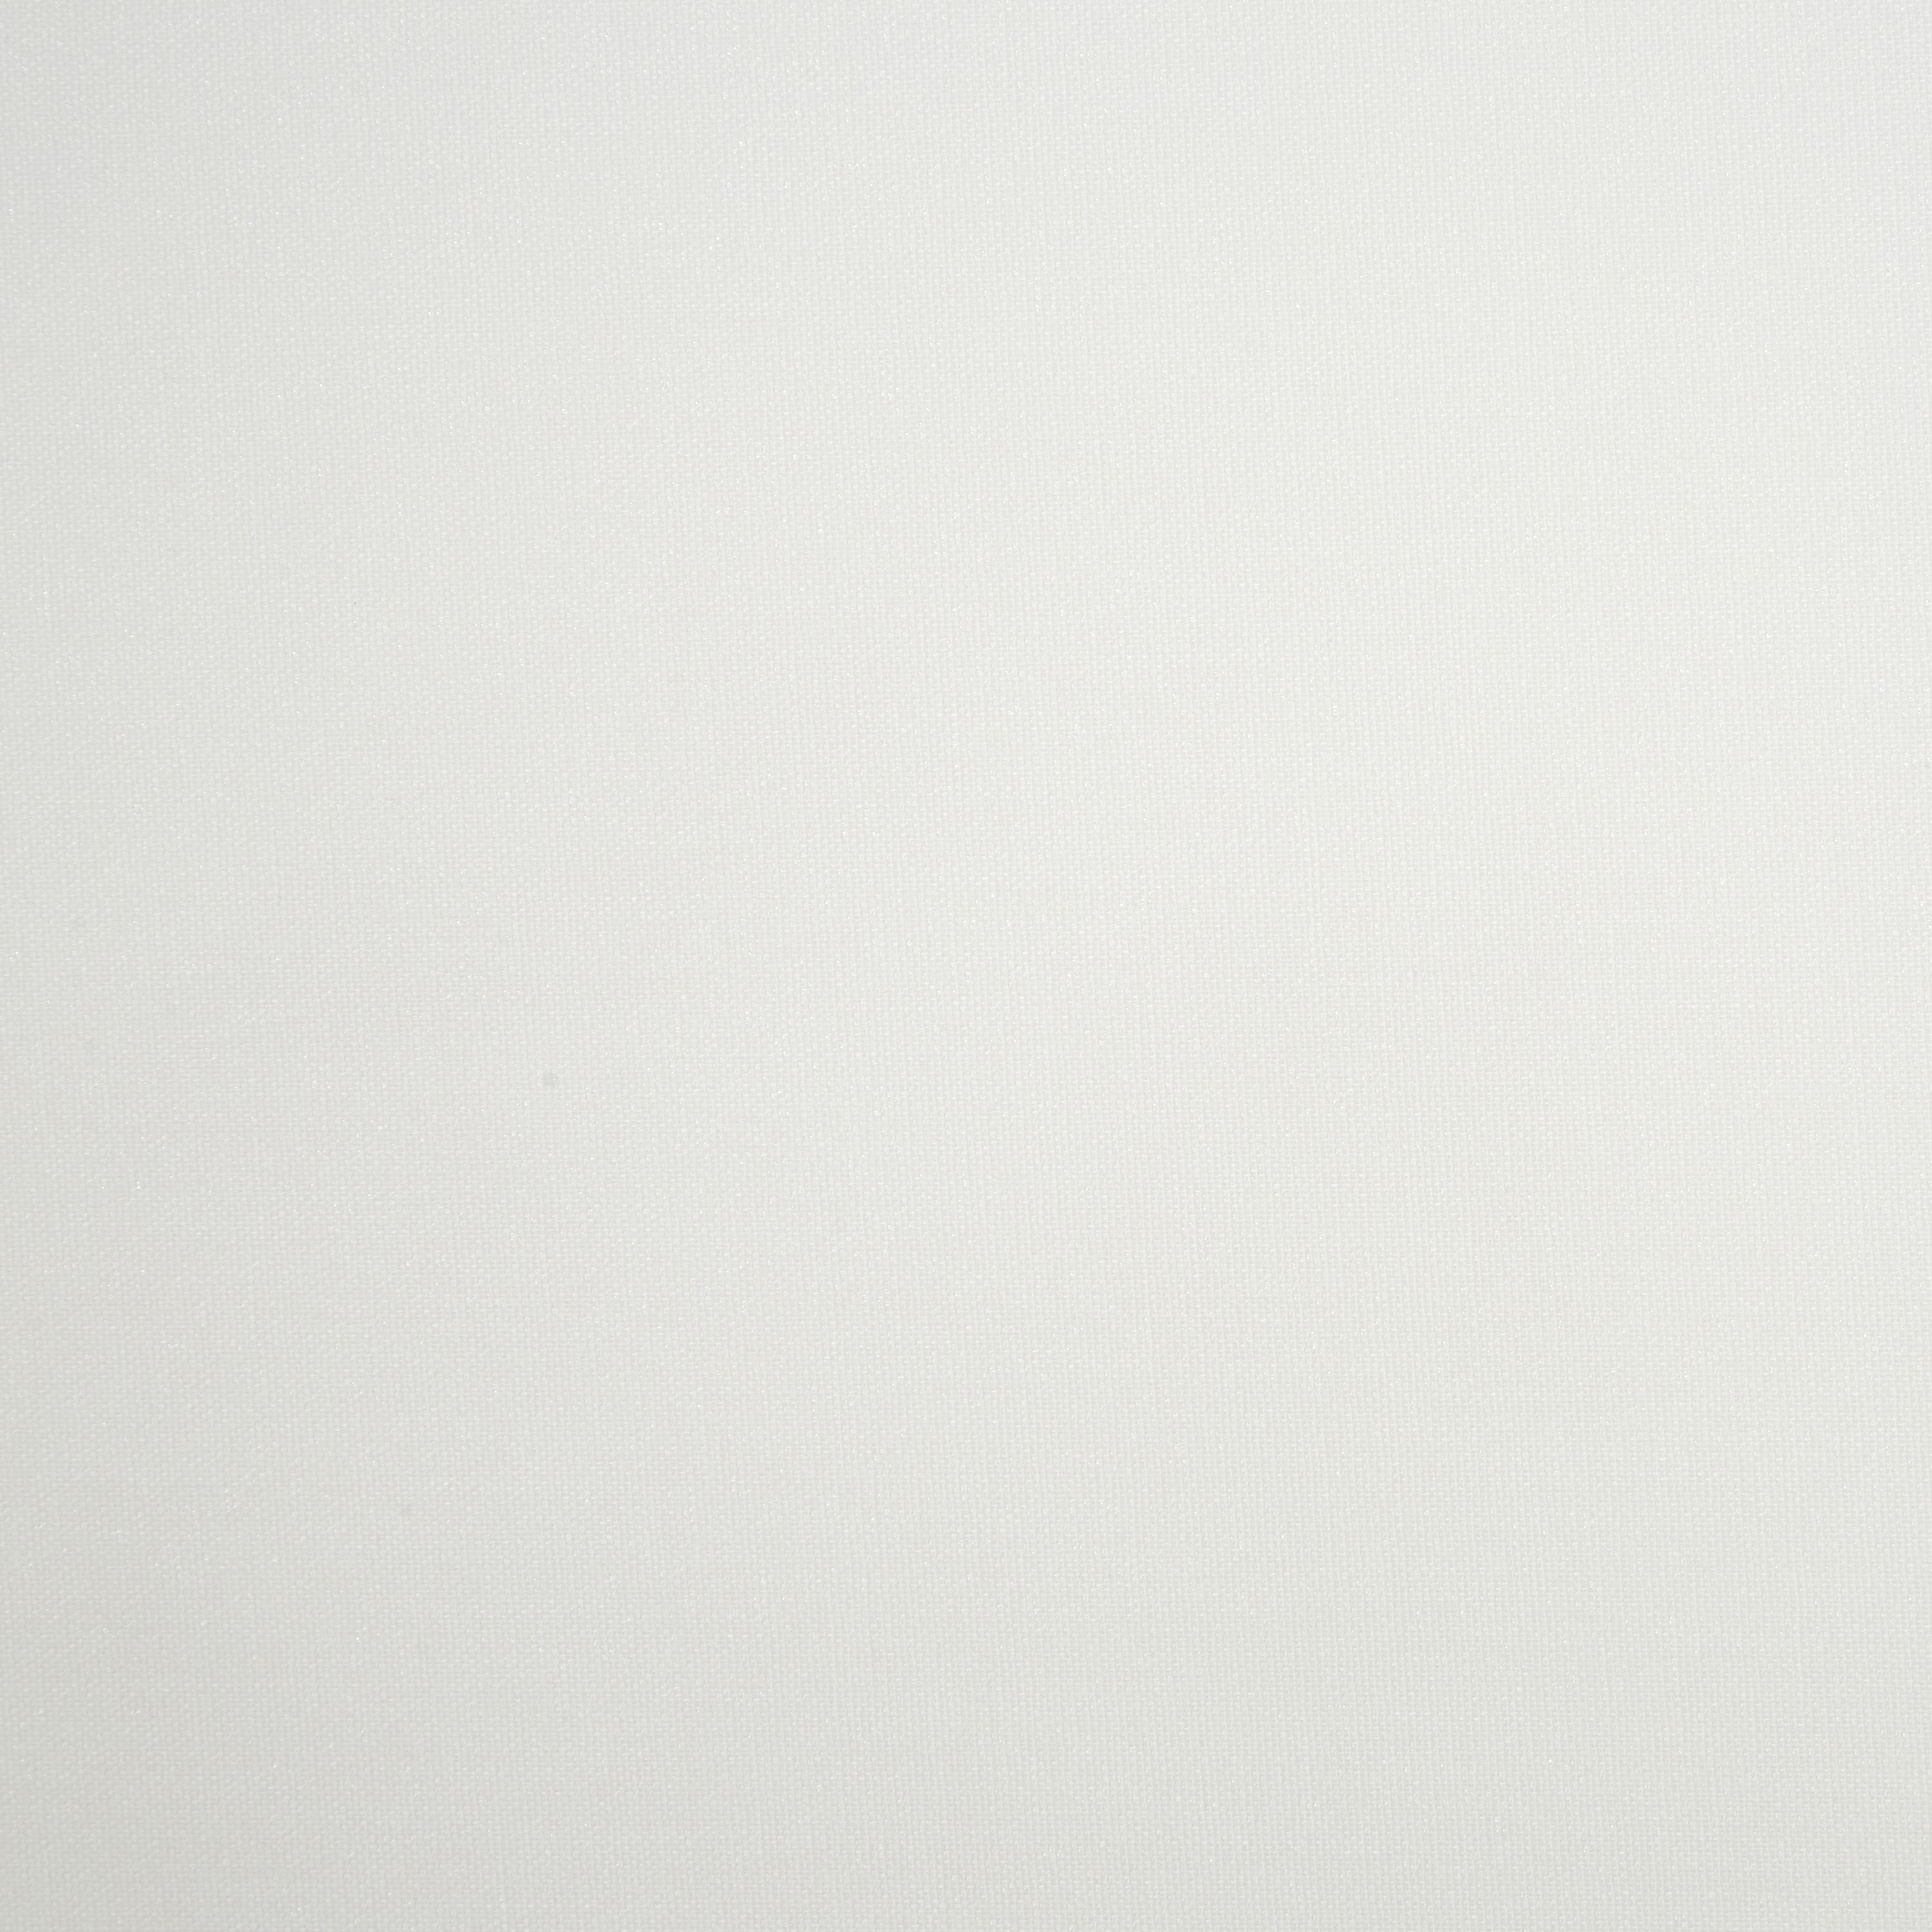 Halo Corded White Plain Daylight Roller blind (W)90cm (L)180cm